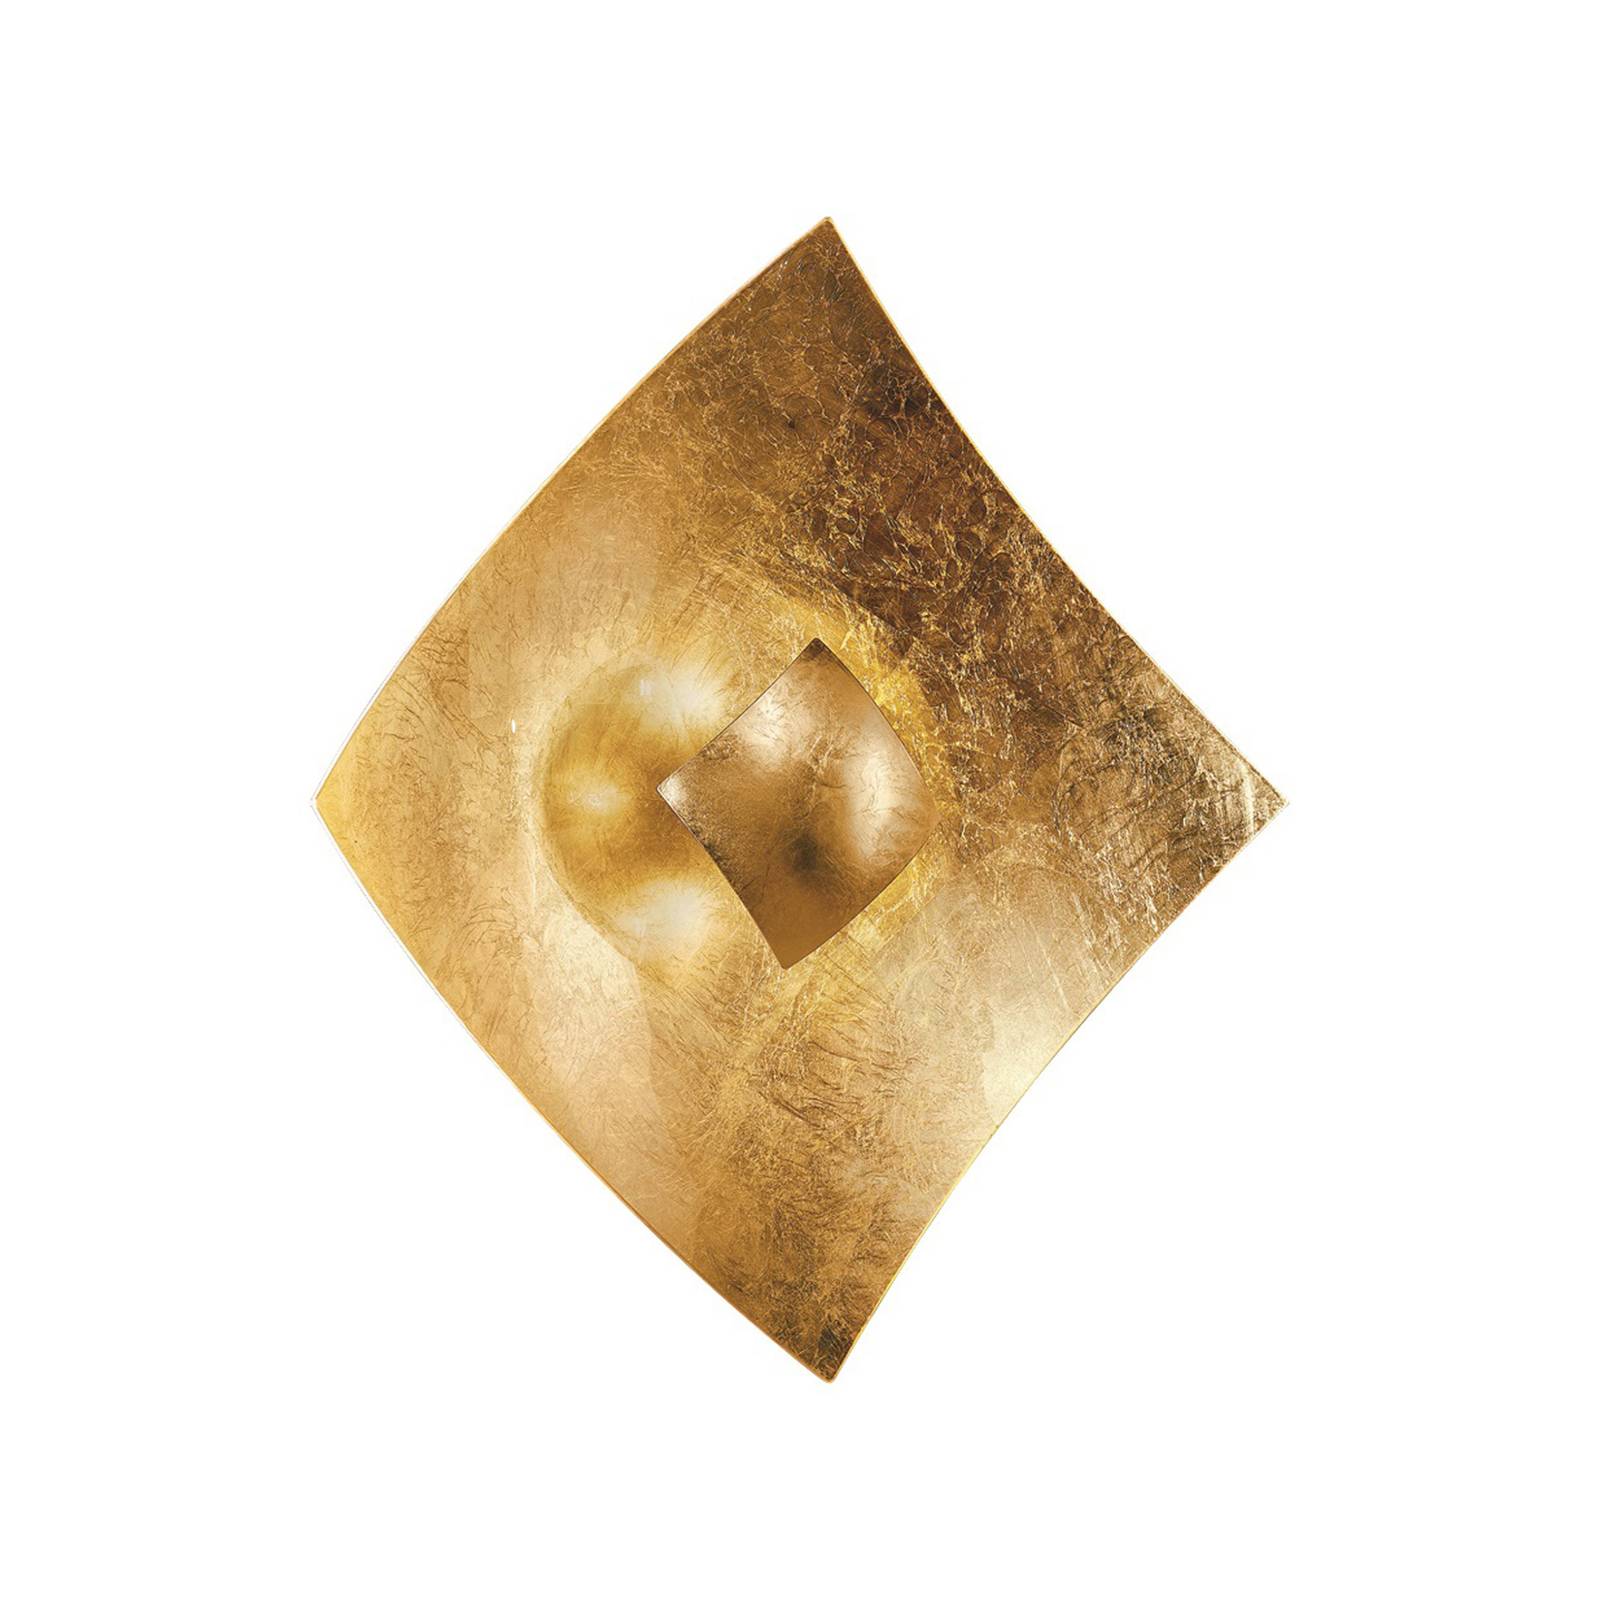 Kögl Nástěnné svítidlo Quadrangolo s plátkovým zlatem, 50 x 50 cm